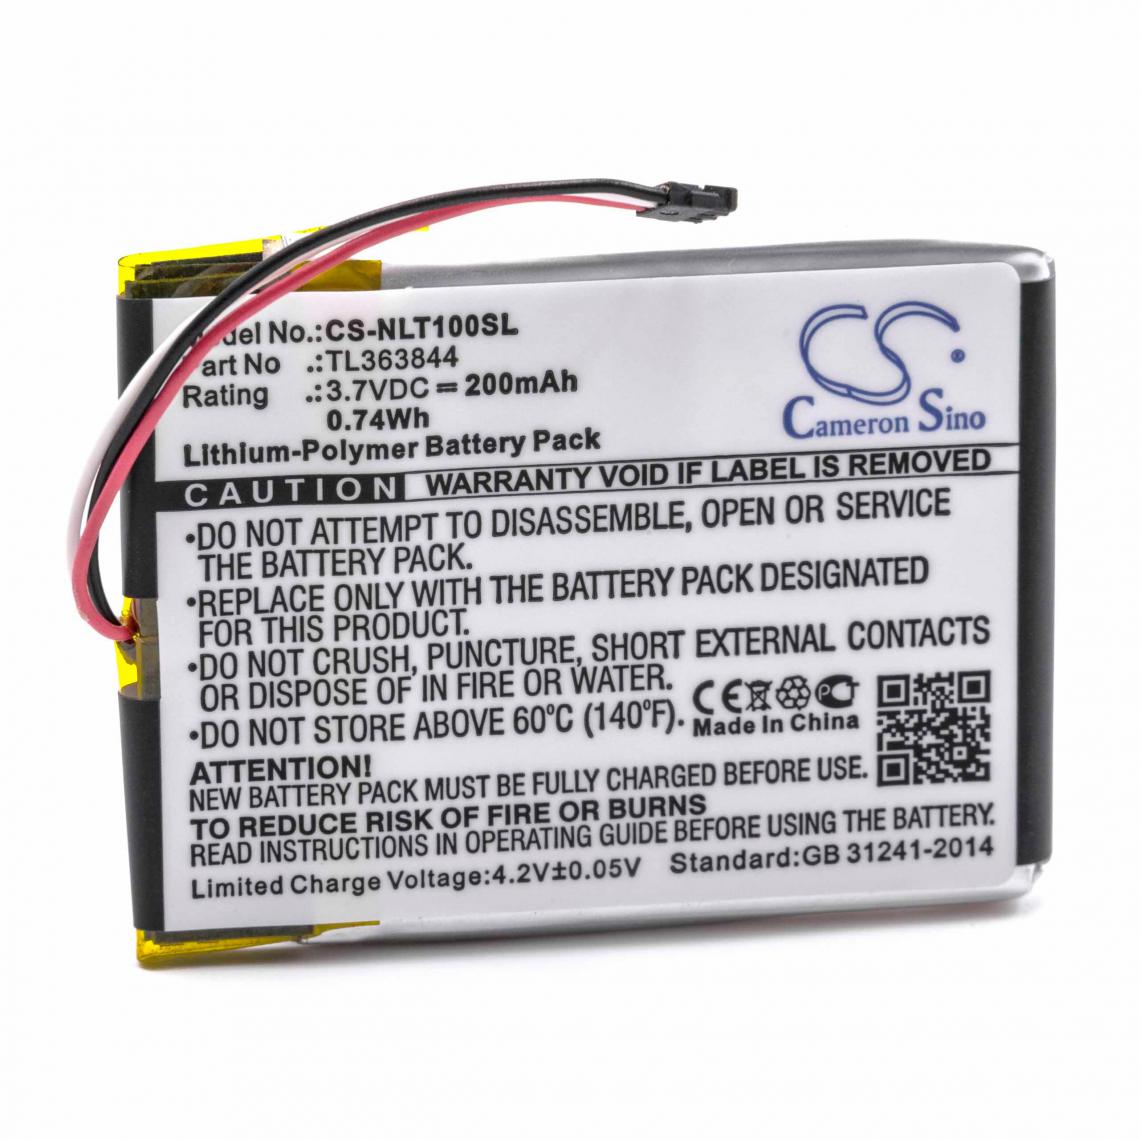 Vhbw - vhbw Batterie Li-Polymère 200mAh (3.7V) pour thermostat, régulateur de température comme Nest TL363844 - Autre appareil de mesure